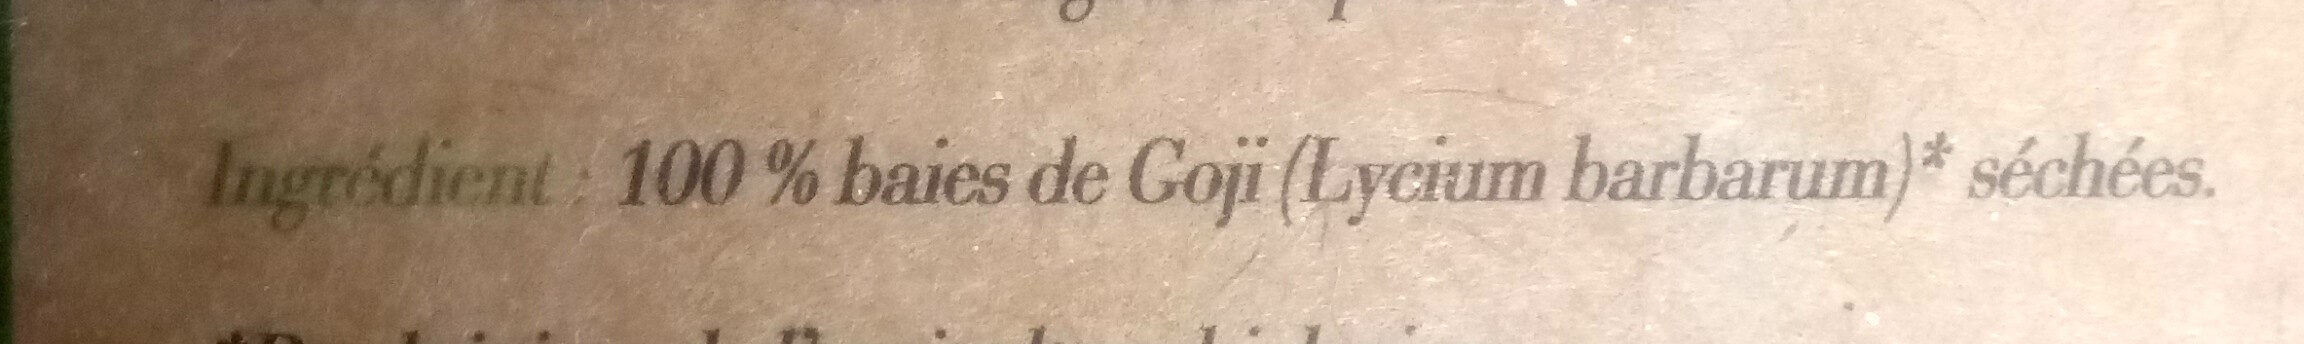 Le goji - Ingredients - fr